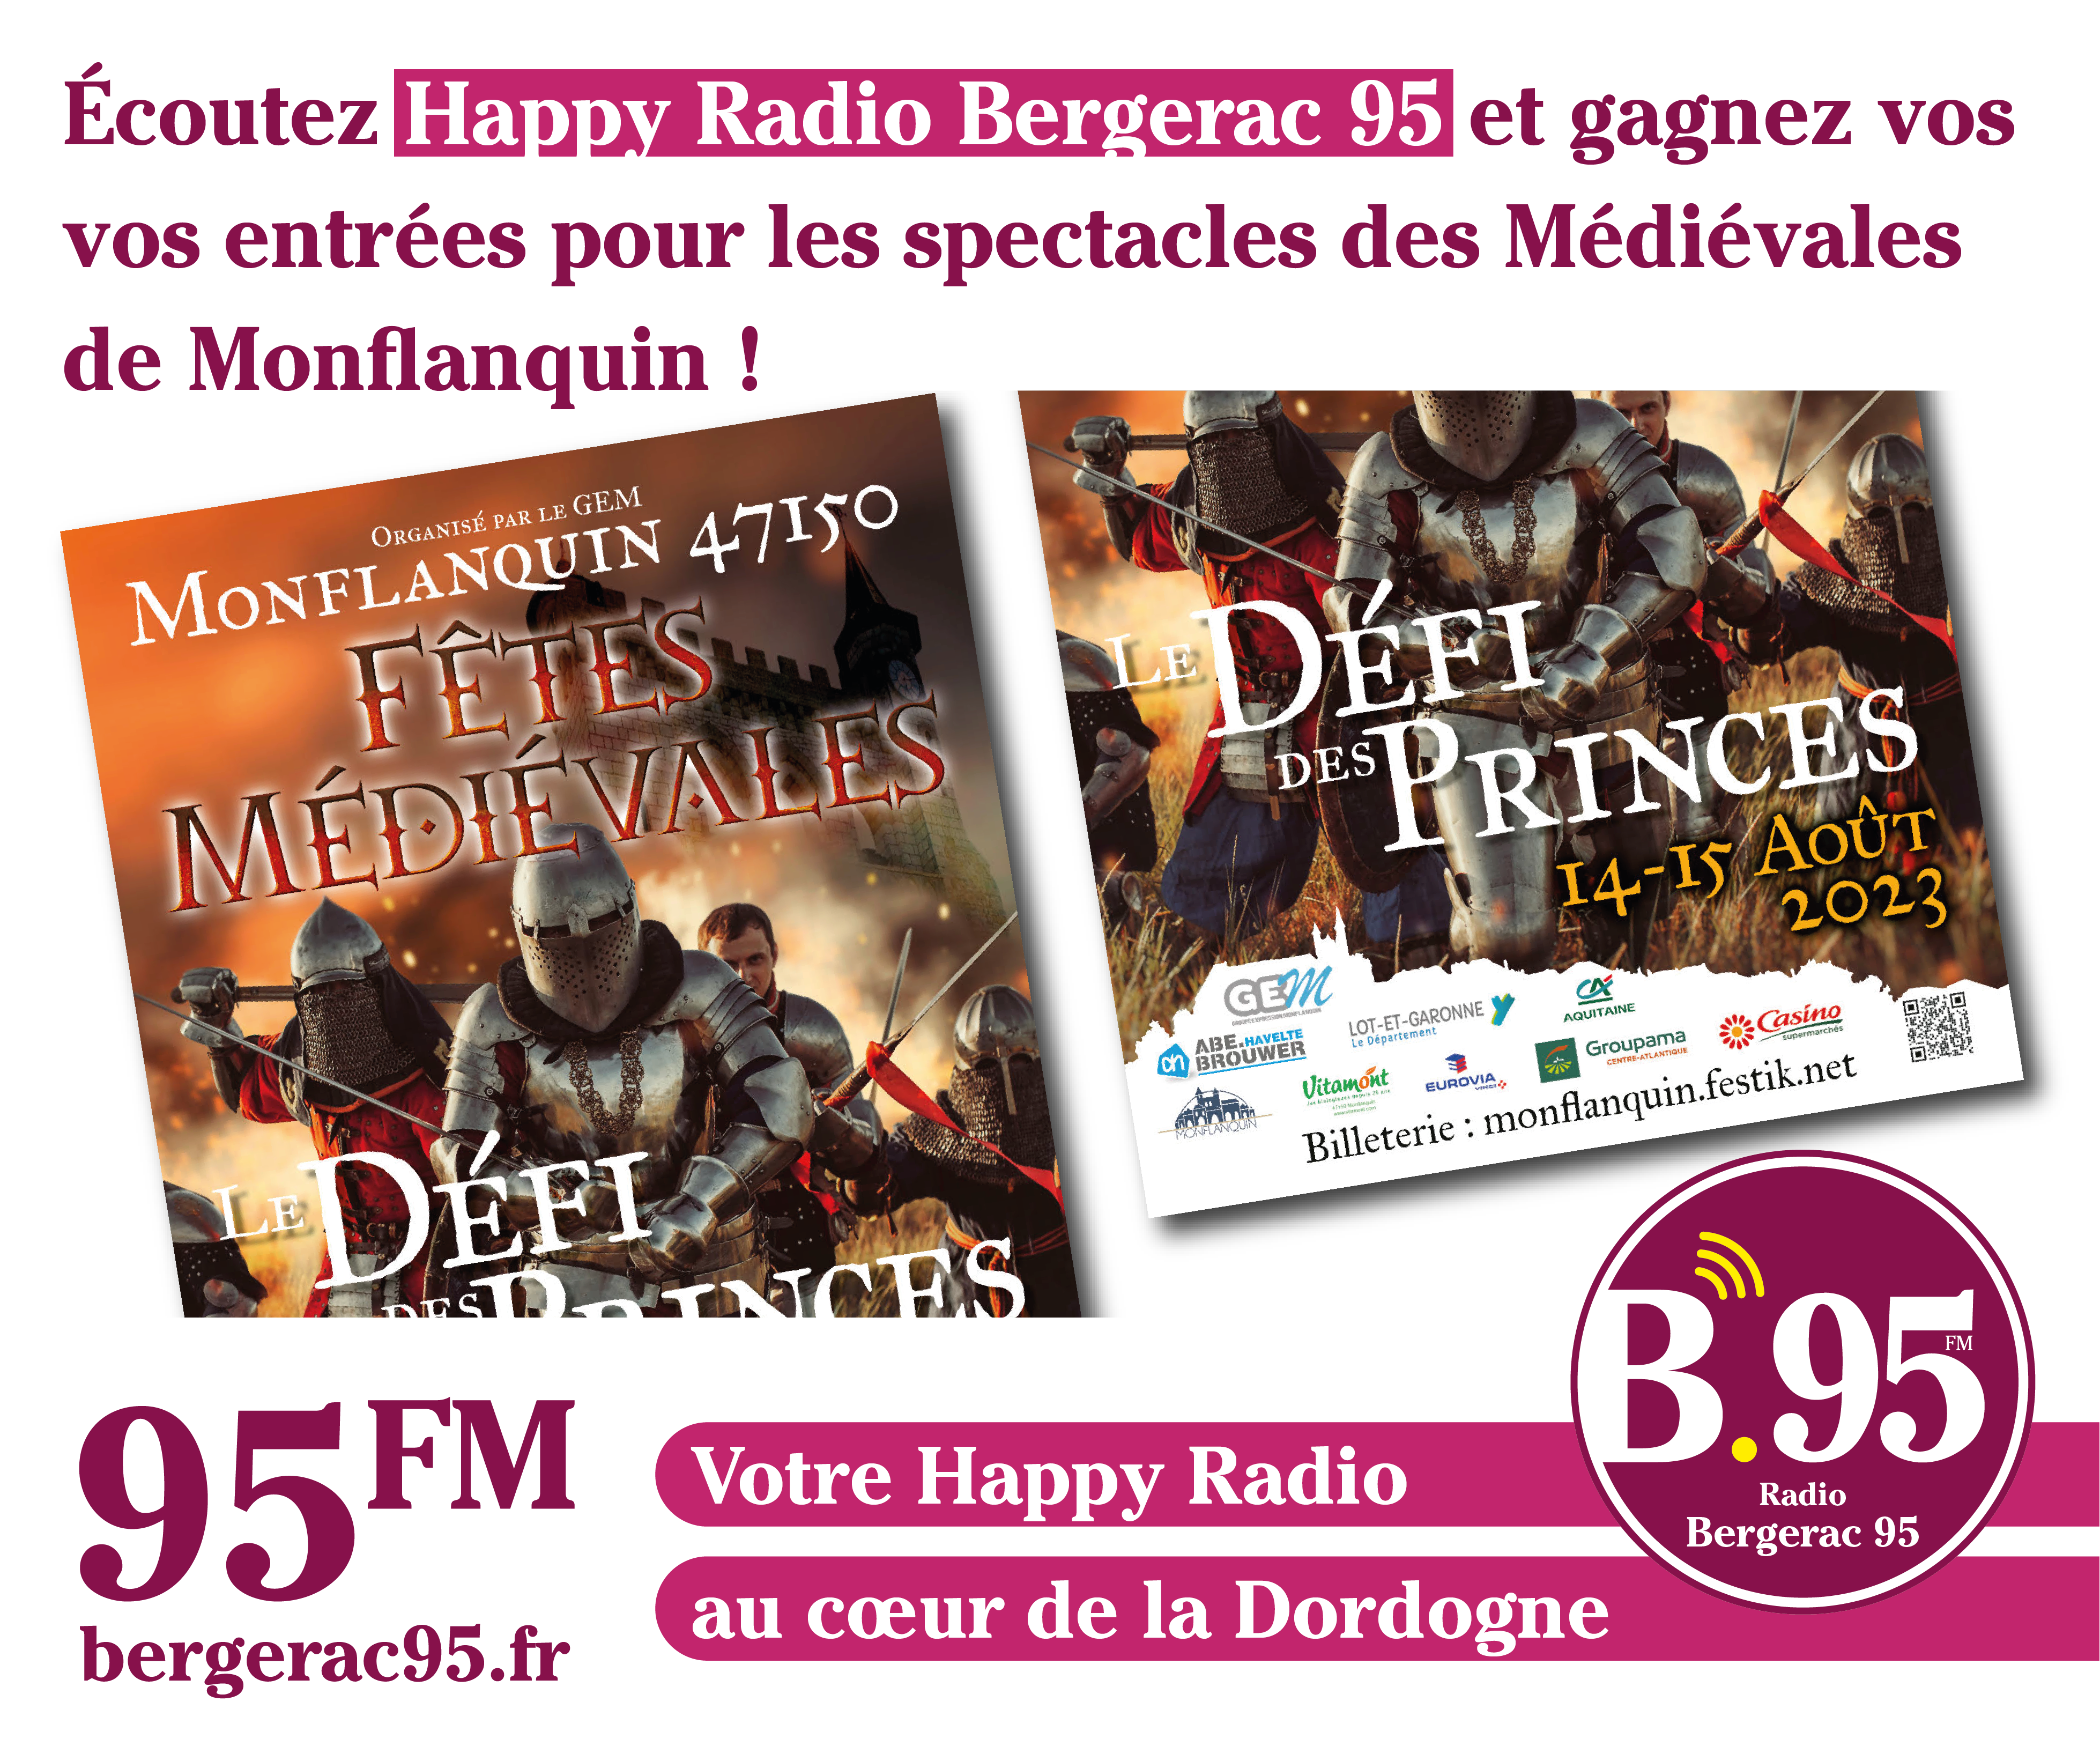 You are currently viewing Écoutez Happy Radio Bergerac 95 et gagnez vos entrées pour les spectacles des Médiévales de Monflanquin !